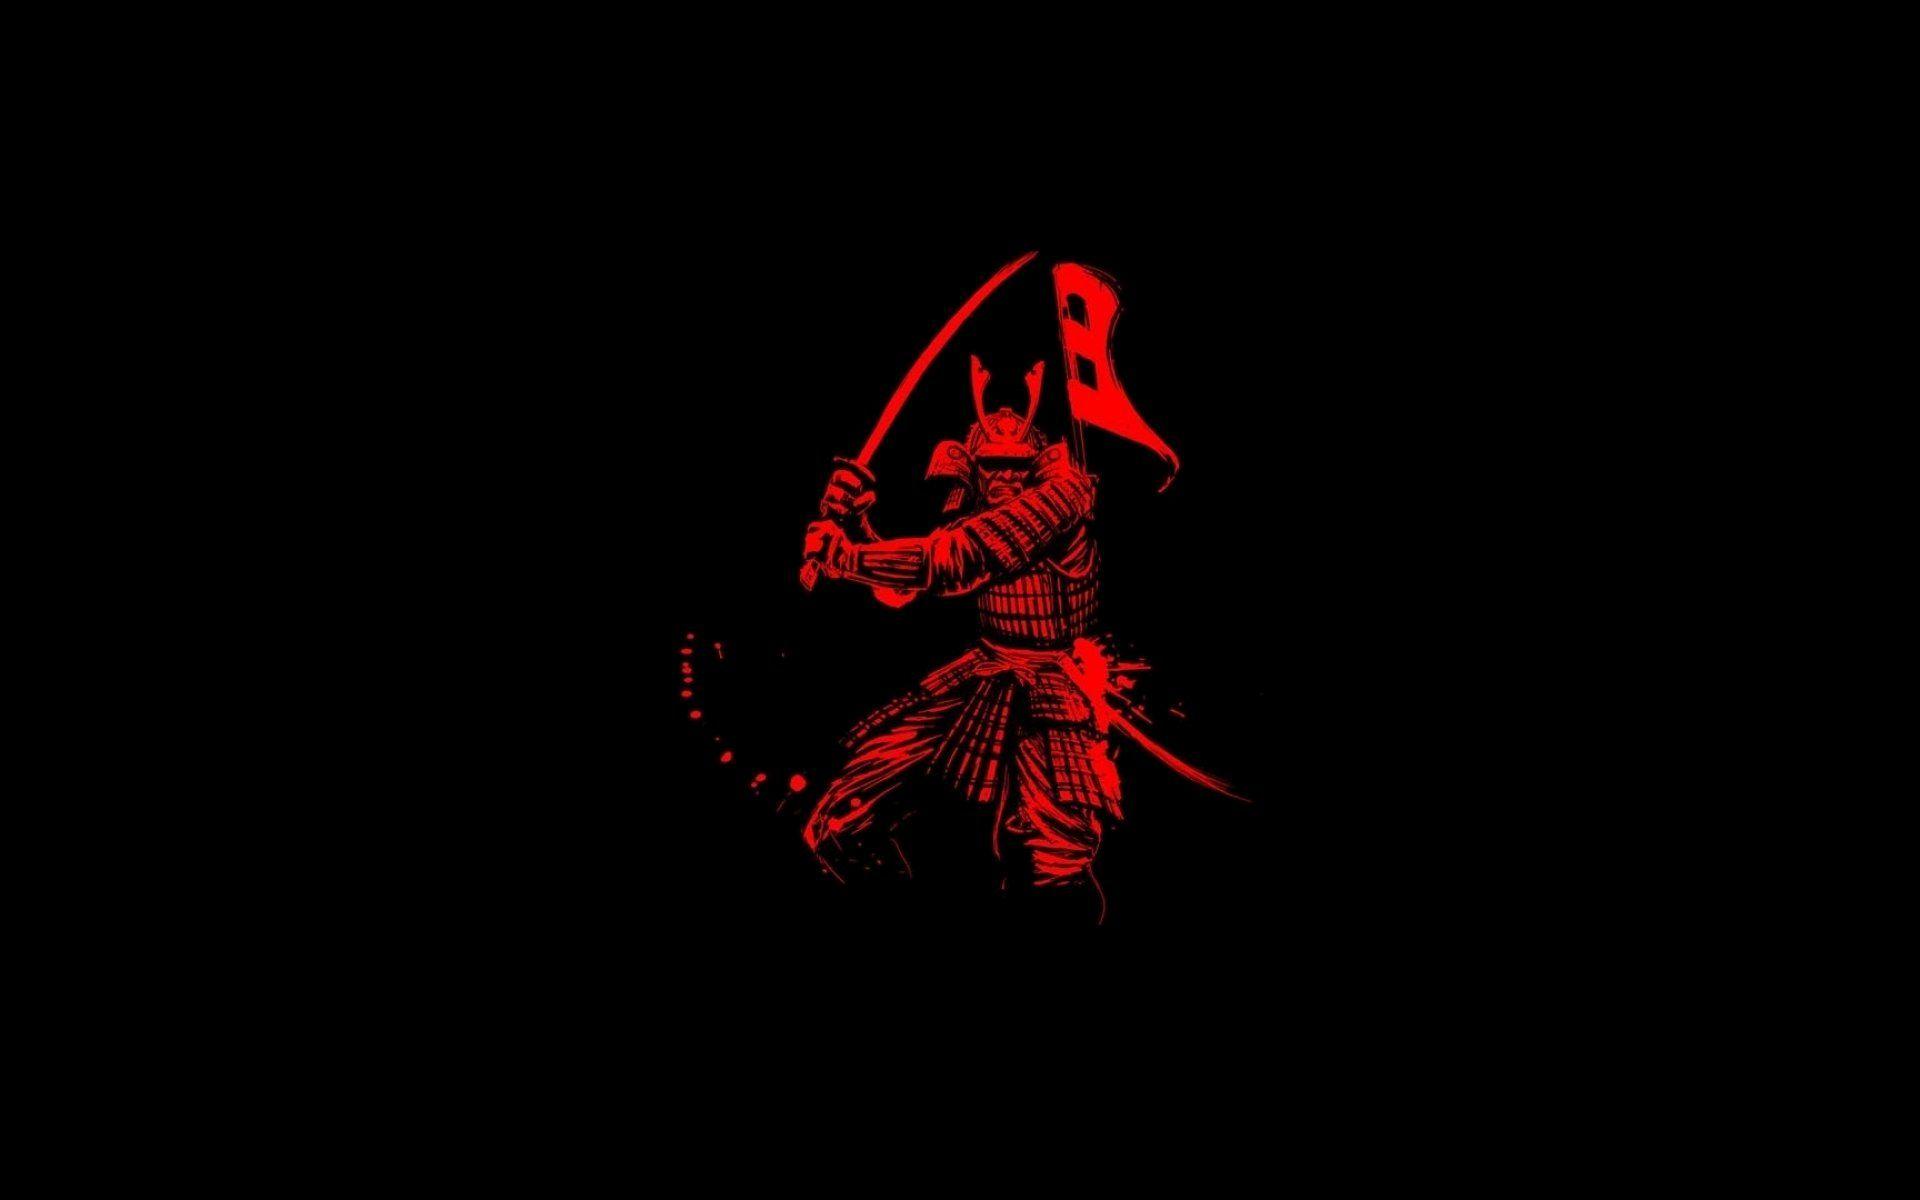 Samurai warrior fantasy art artwork asian wallpaper. Download